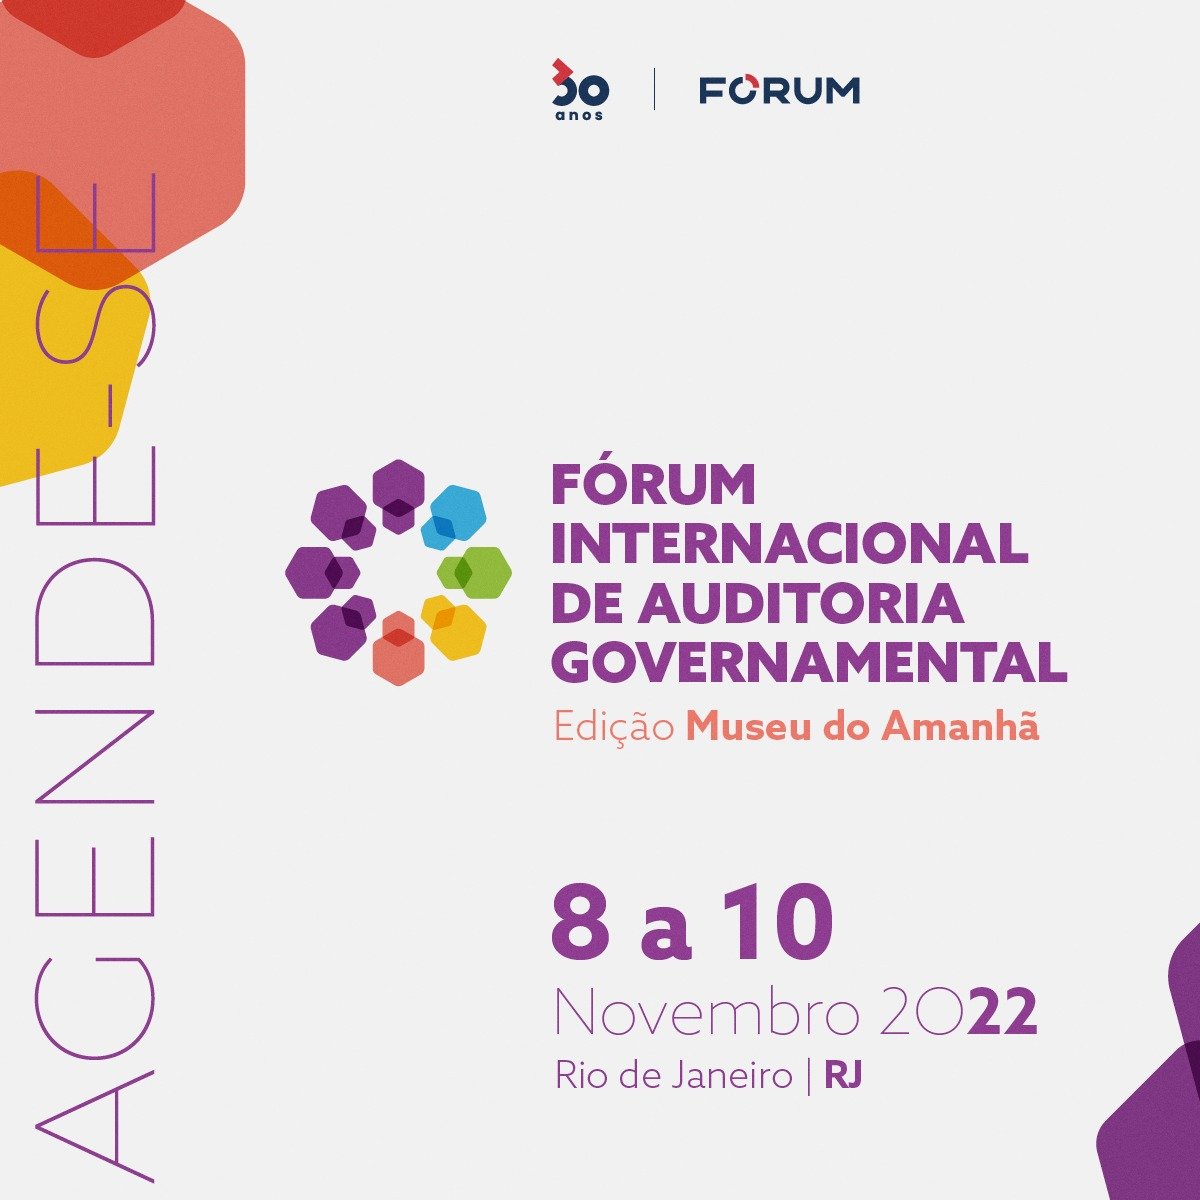 Fórum Internacional de Auditoria Governamental: orgulho de estar fazendo parte desta iniciativa